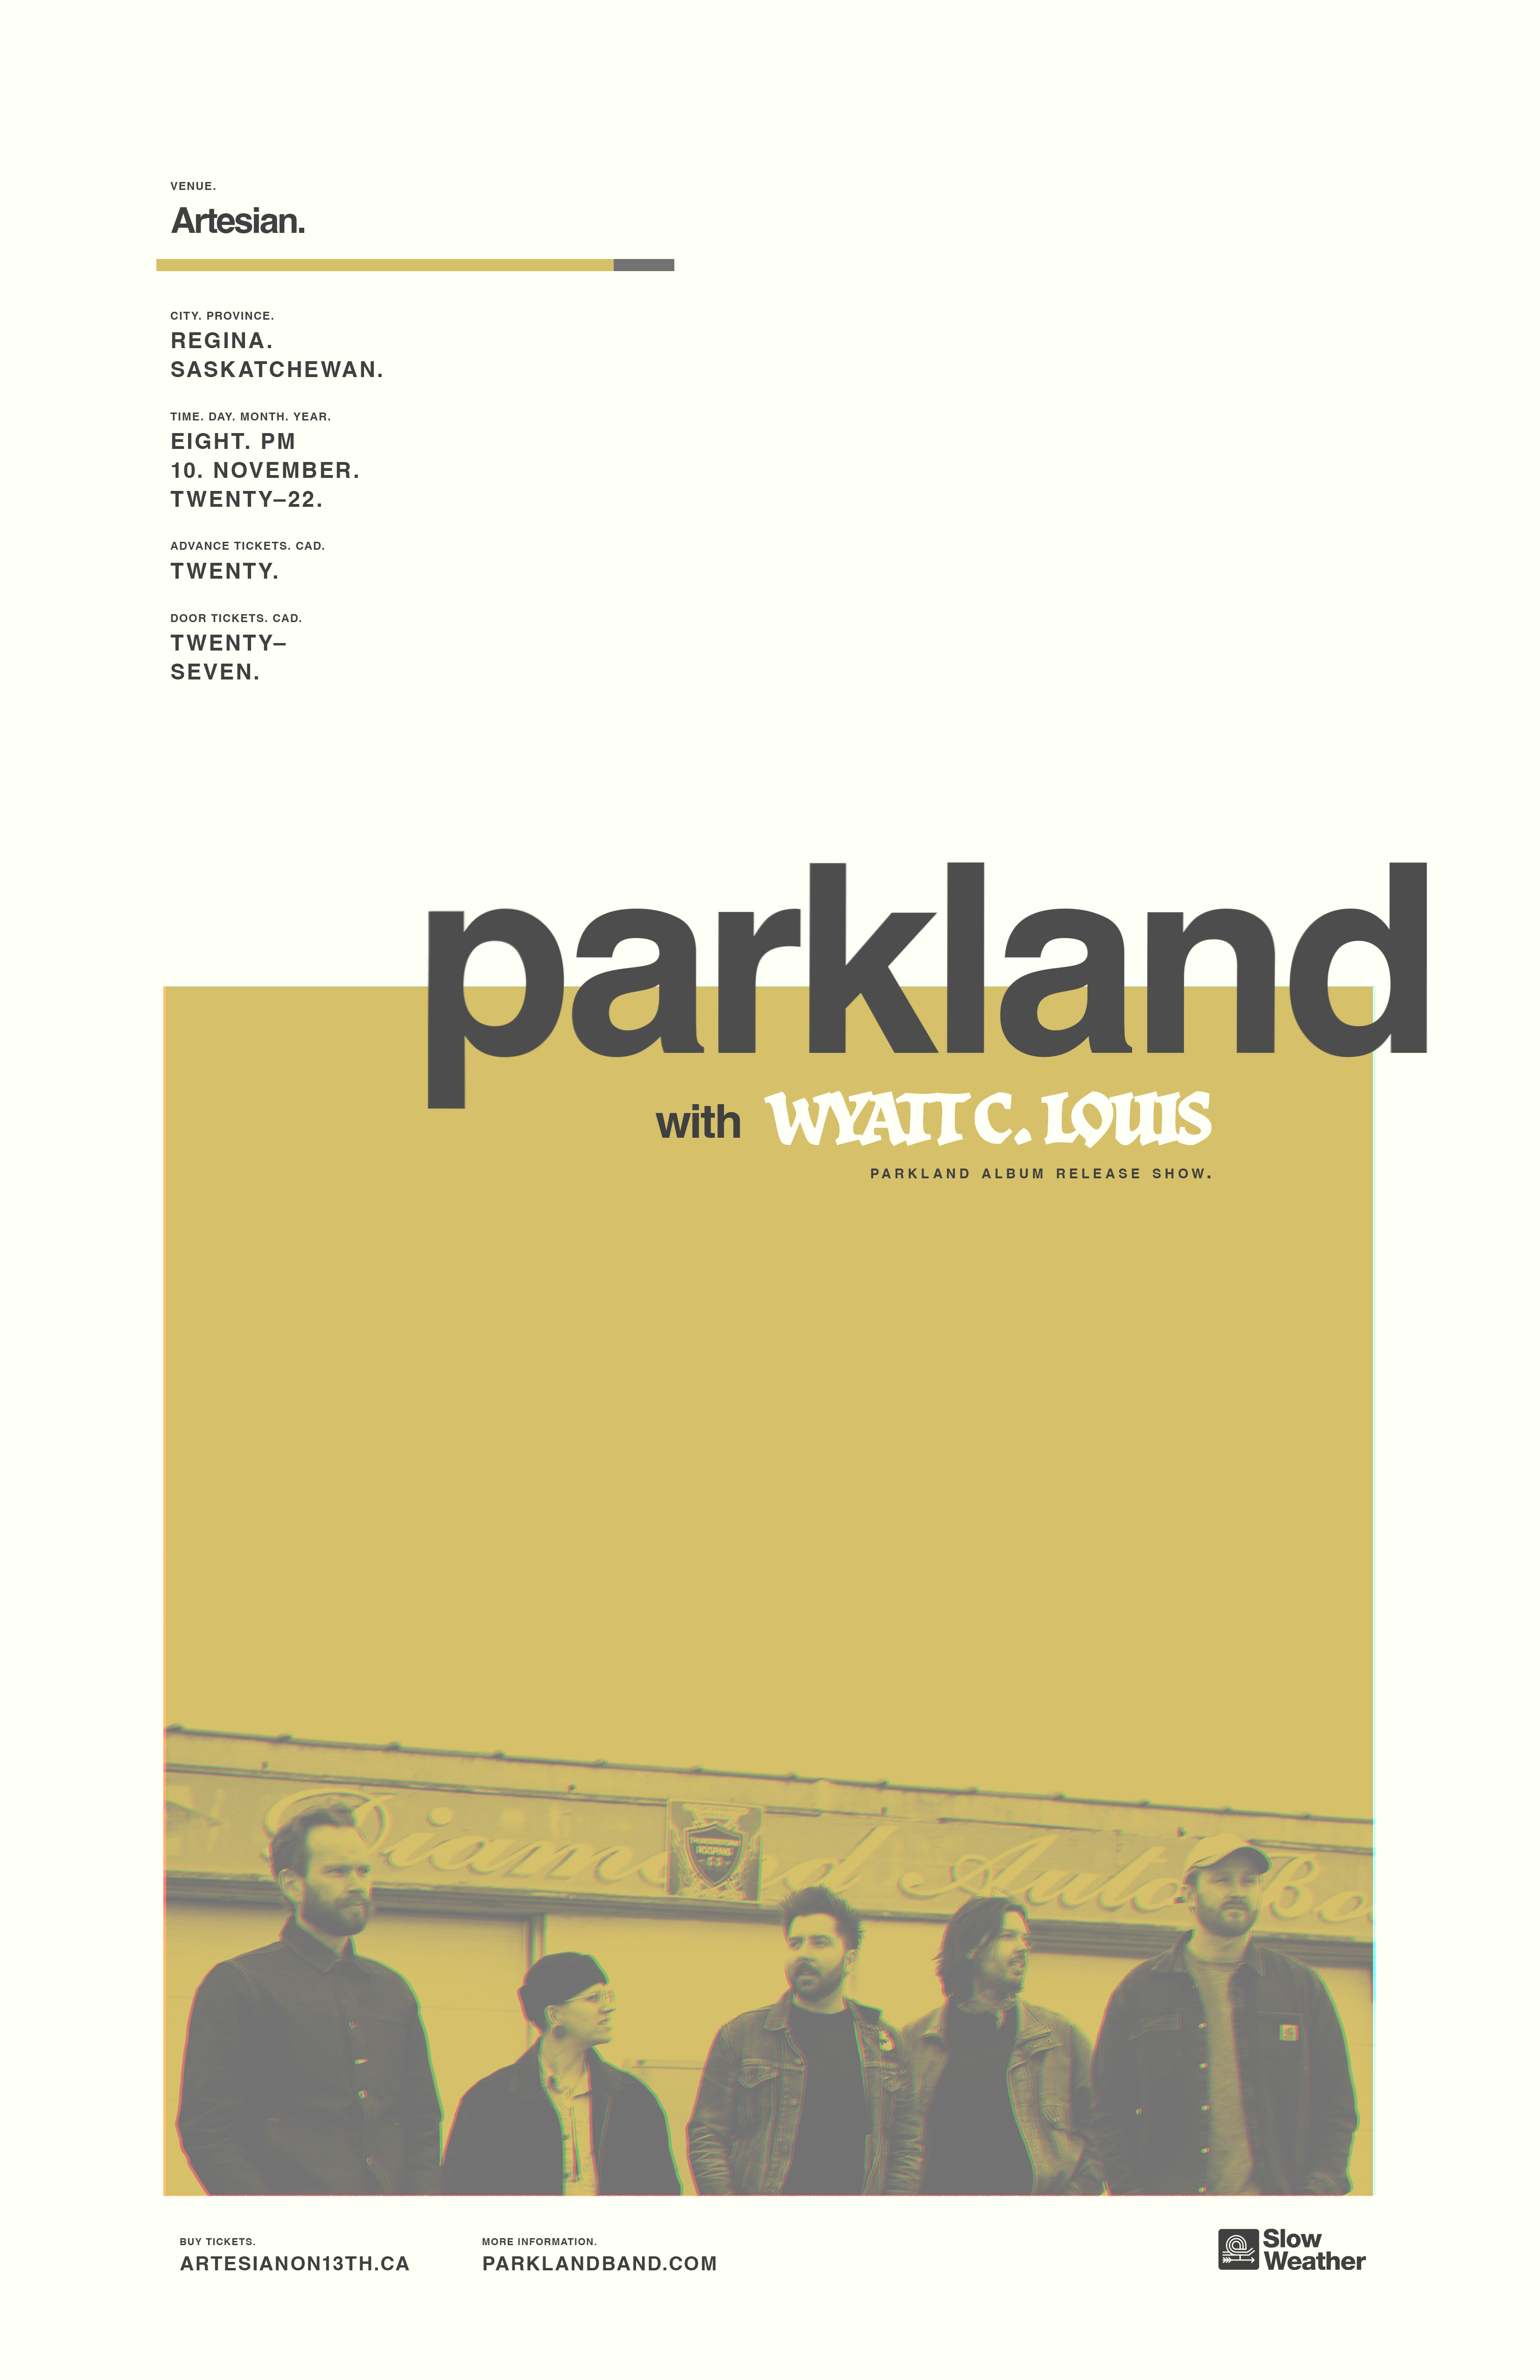 Parkland Album Release Show with special guest Wyatt C. Louis